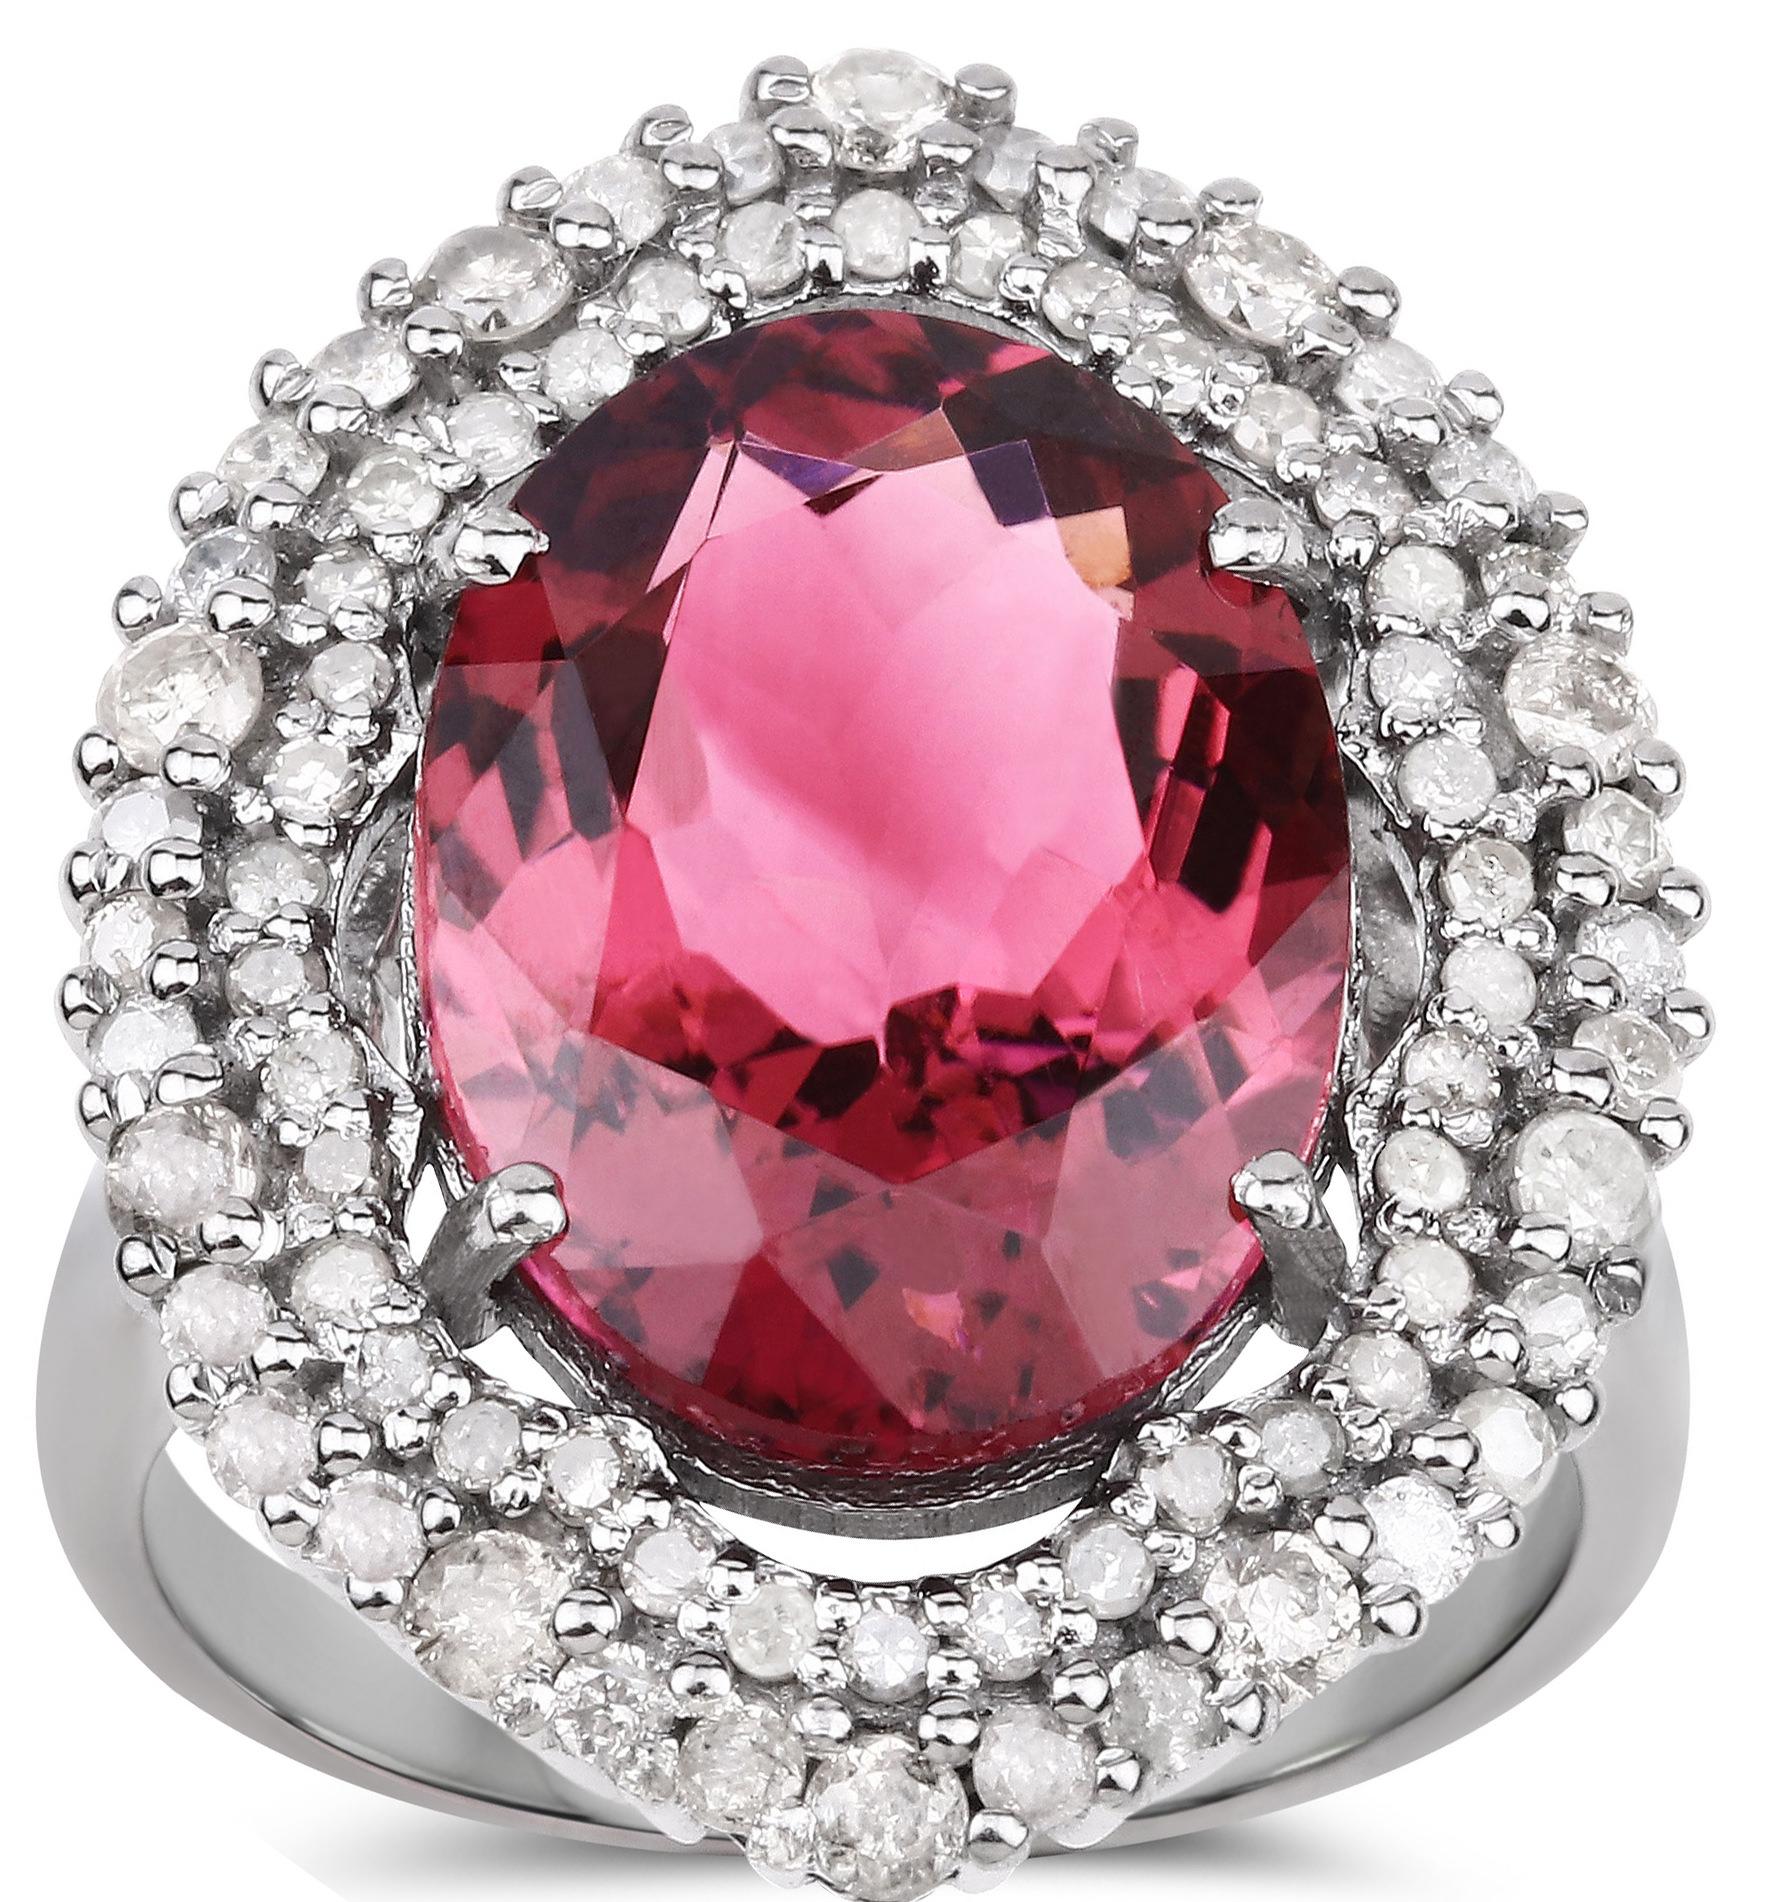 Taille ovale Bague fantaisie en tourmaline rose naturelle avec diamants 9 carats au total